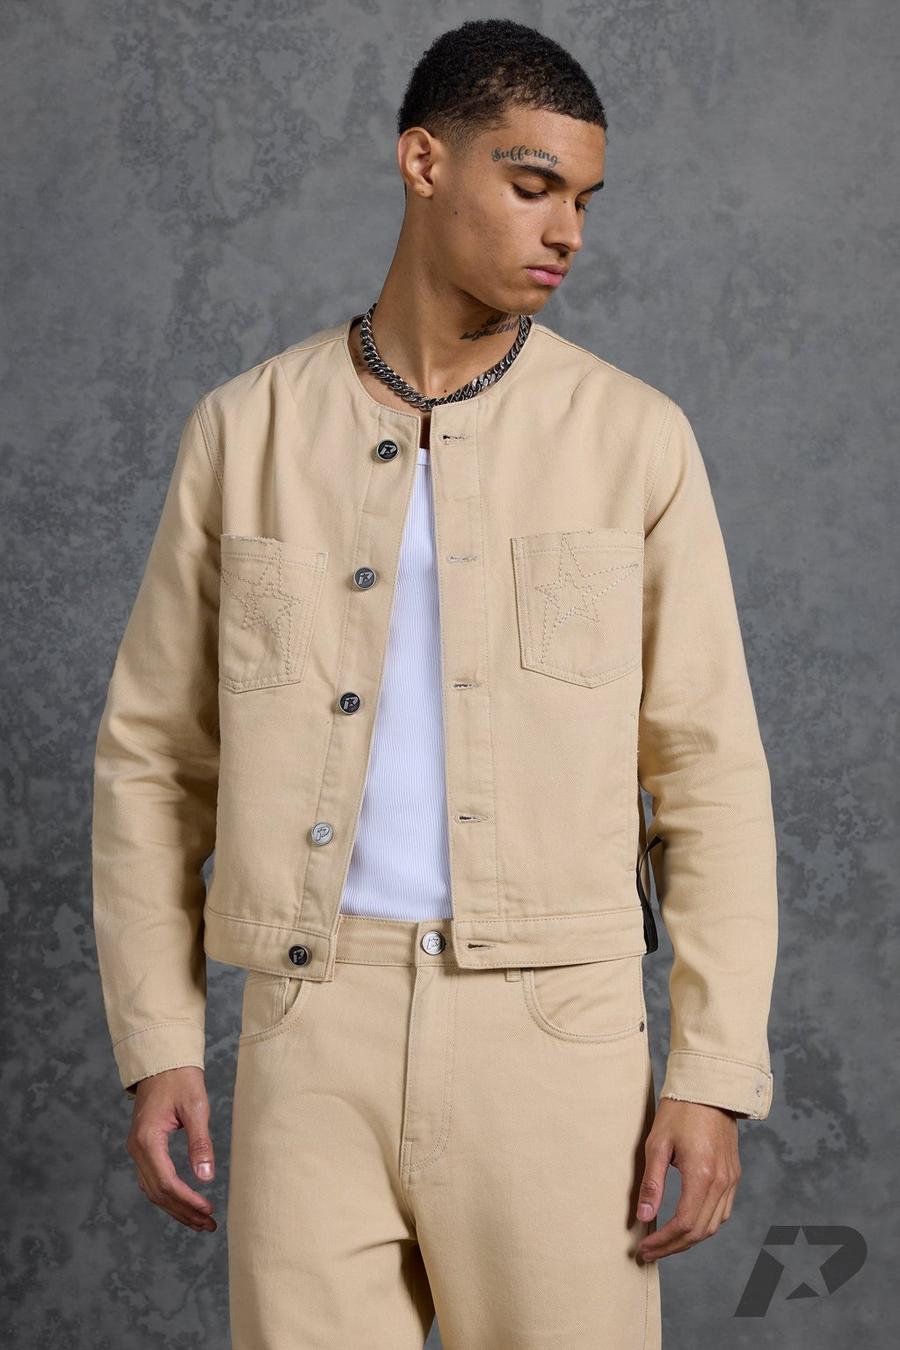 White Corduroy Jacket Outfit Men | lupon.gov.ph